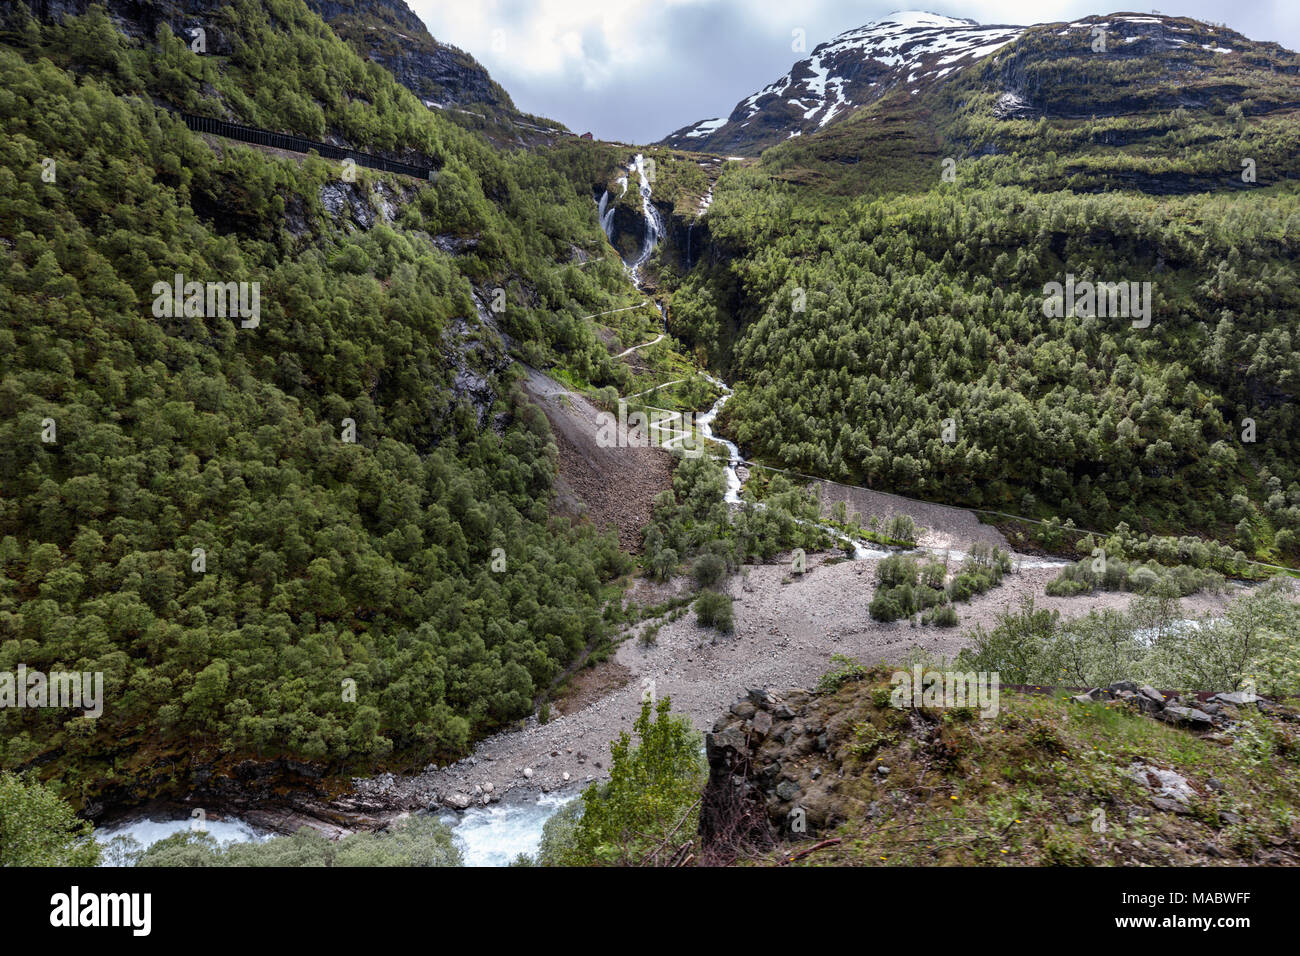 Die Flam Fluss und Wasserfälle in Flam, Norwegen. Vom Falm Express gesehen. Stockfoto